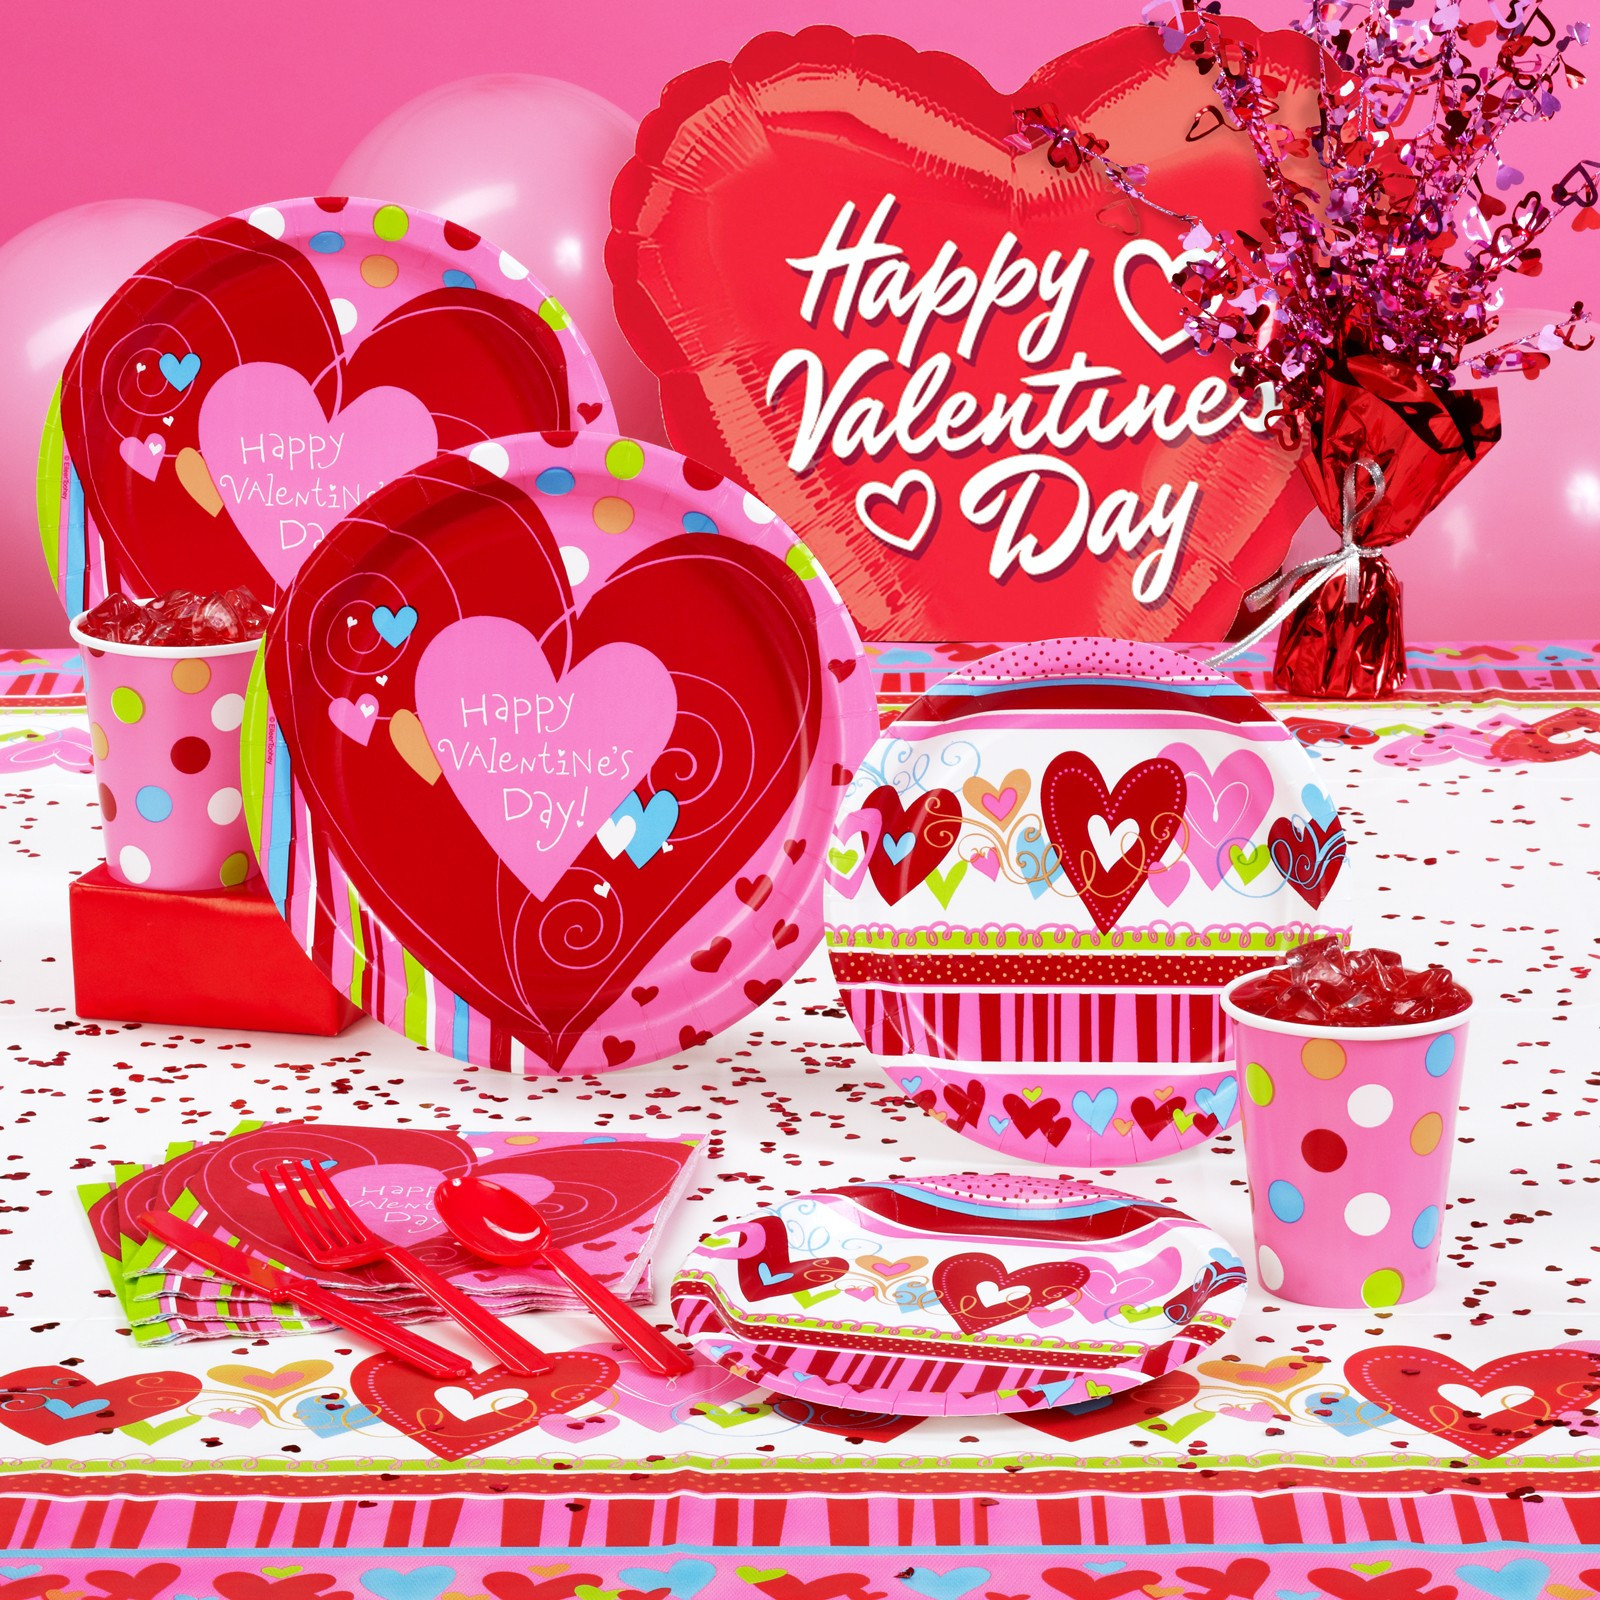 Valentines Birthday Gift Ideas
 Best Valentines Day Party Ideas 2015